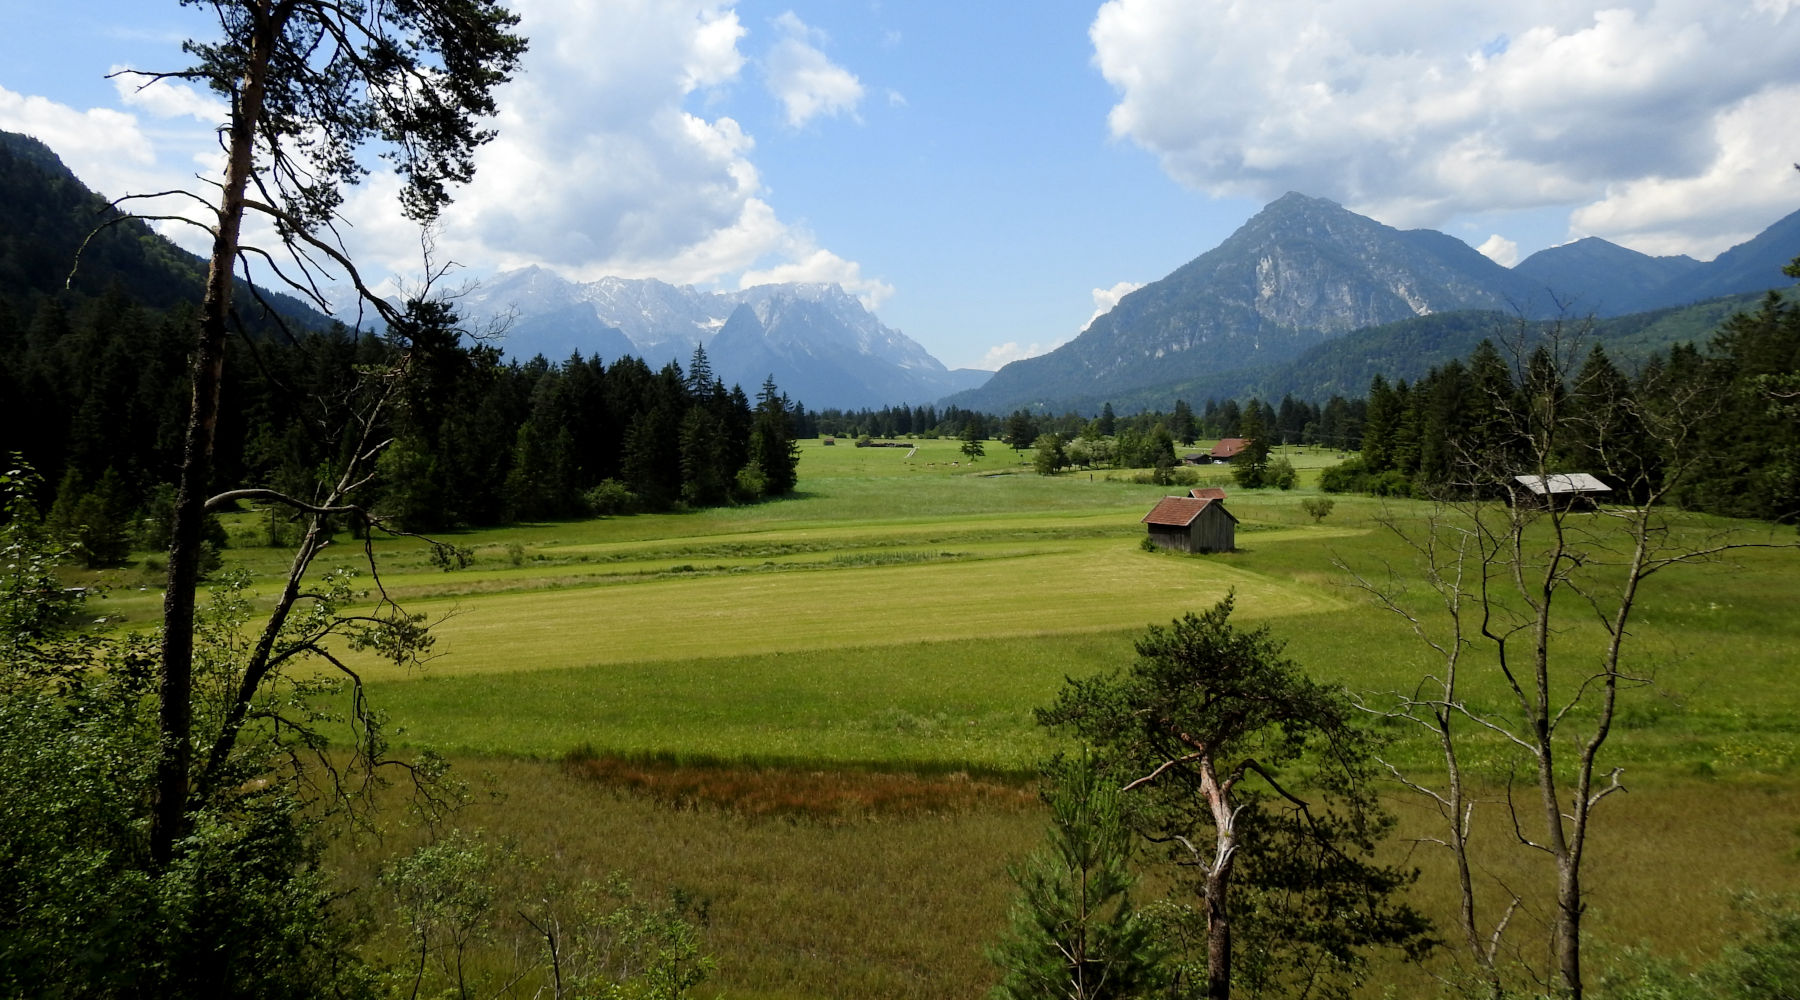 Badersee Blog: Spitzenwanderweg Trail Section 2 - From Eschenlohe to Garmisch-Partenkirchen